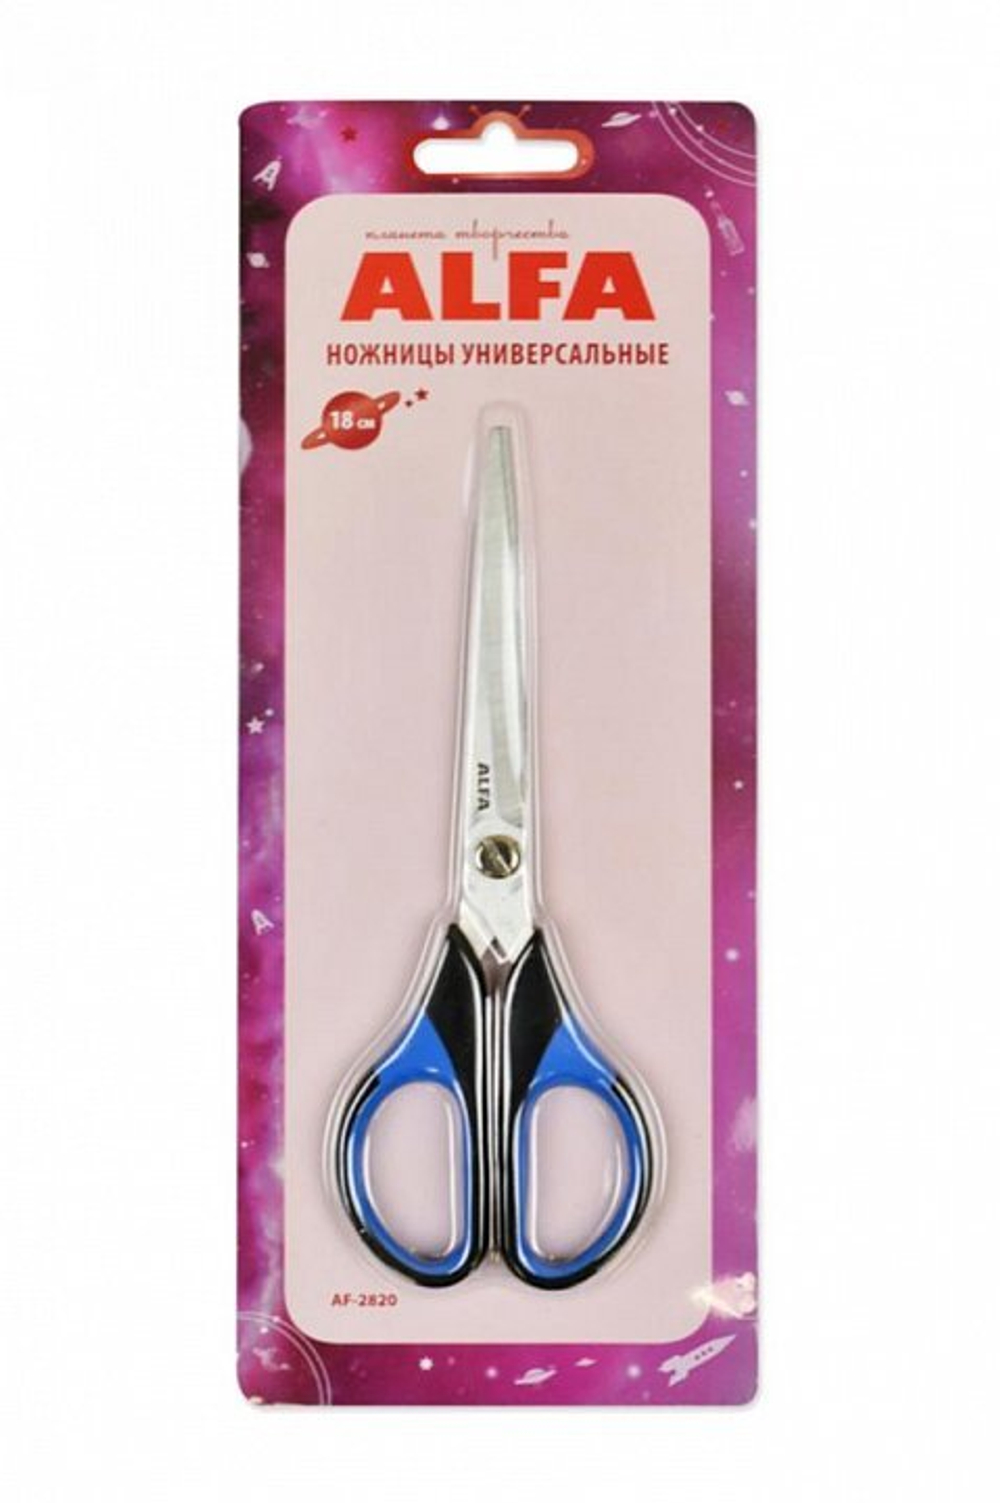 Ножницы универсальные Alfa, 18 см (AF-2820)